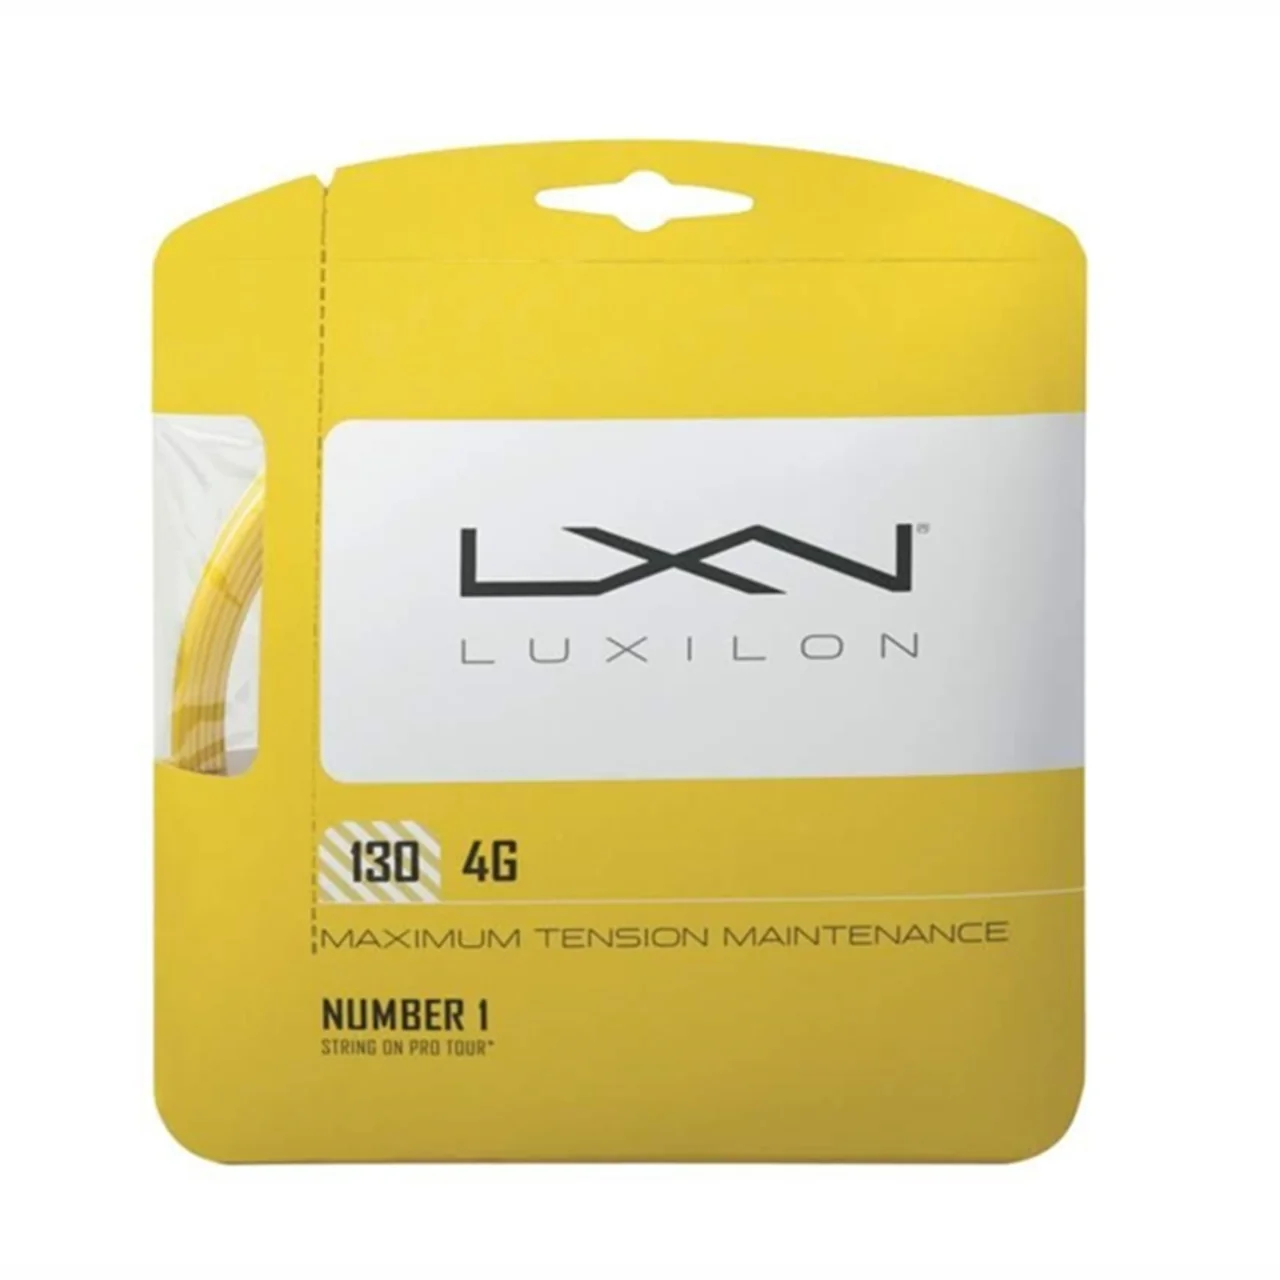 Luxilon 4G S Gold Set